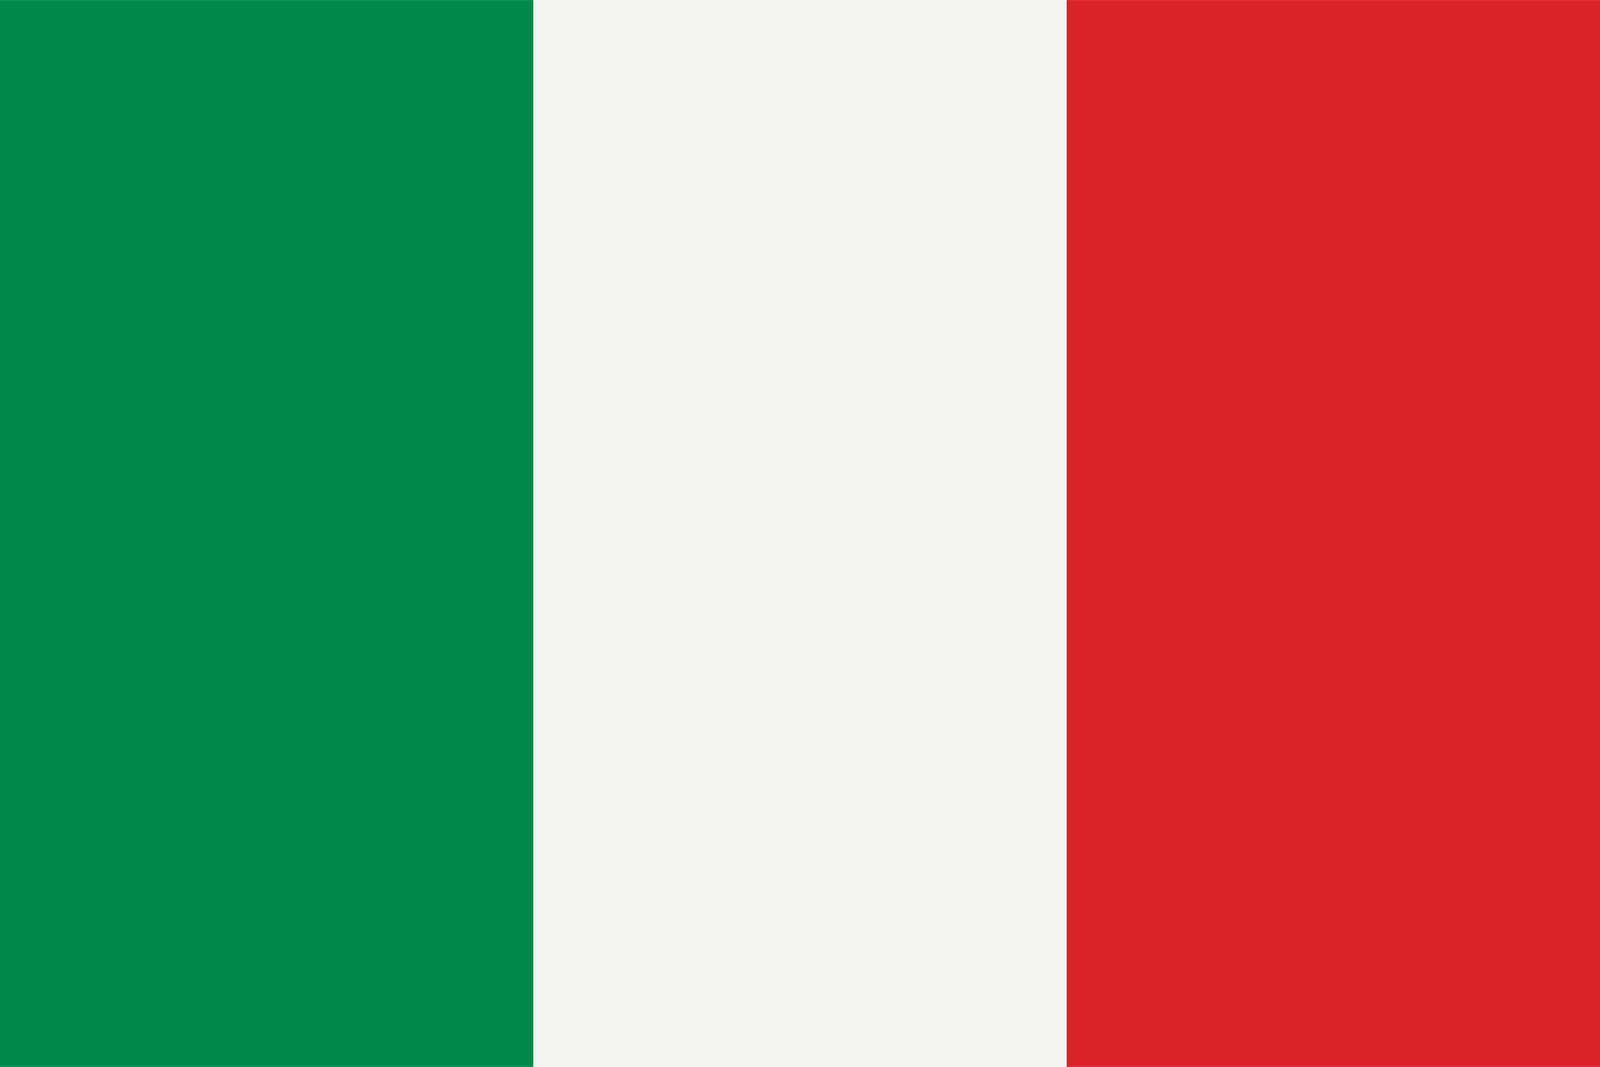 Cutout Image of the Italian Flag